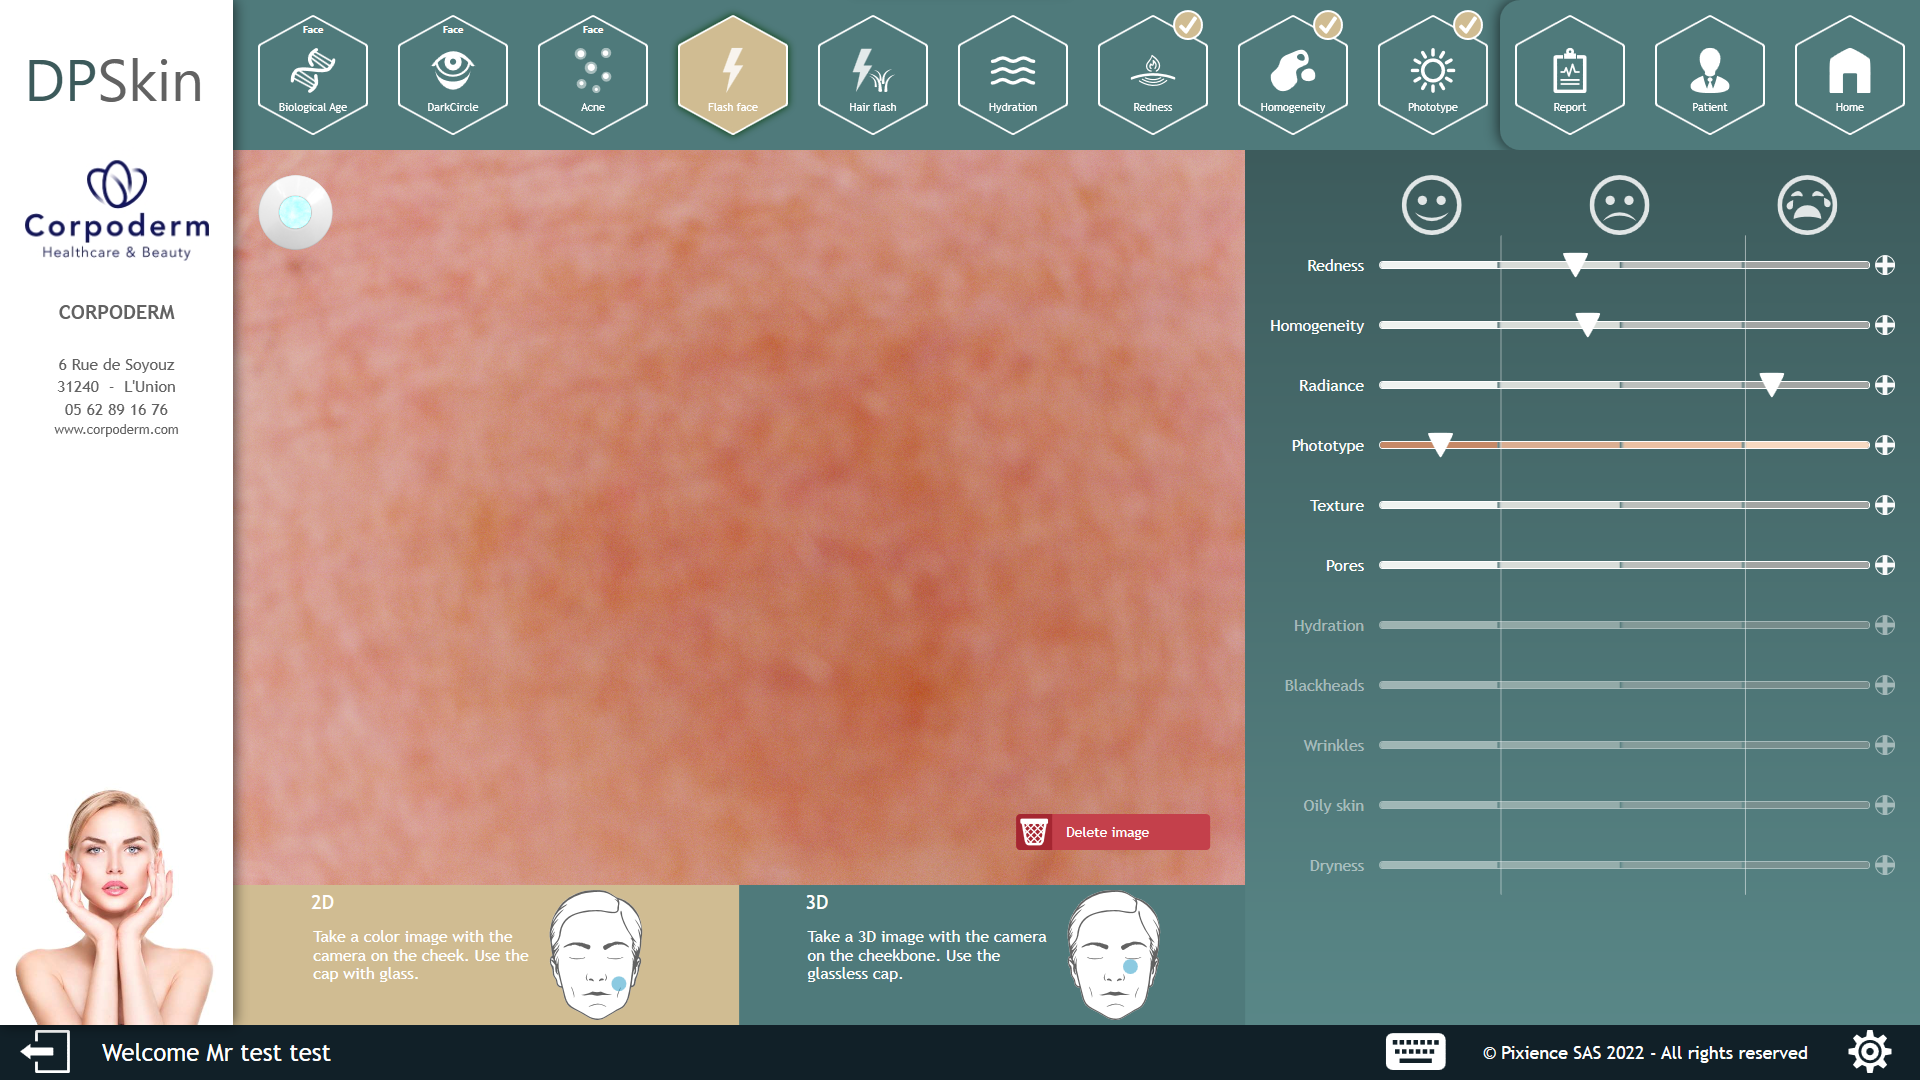 evaluación de pasos de análisis de la piel con dp skin